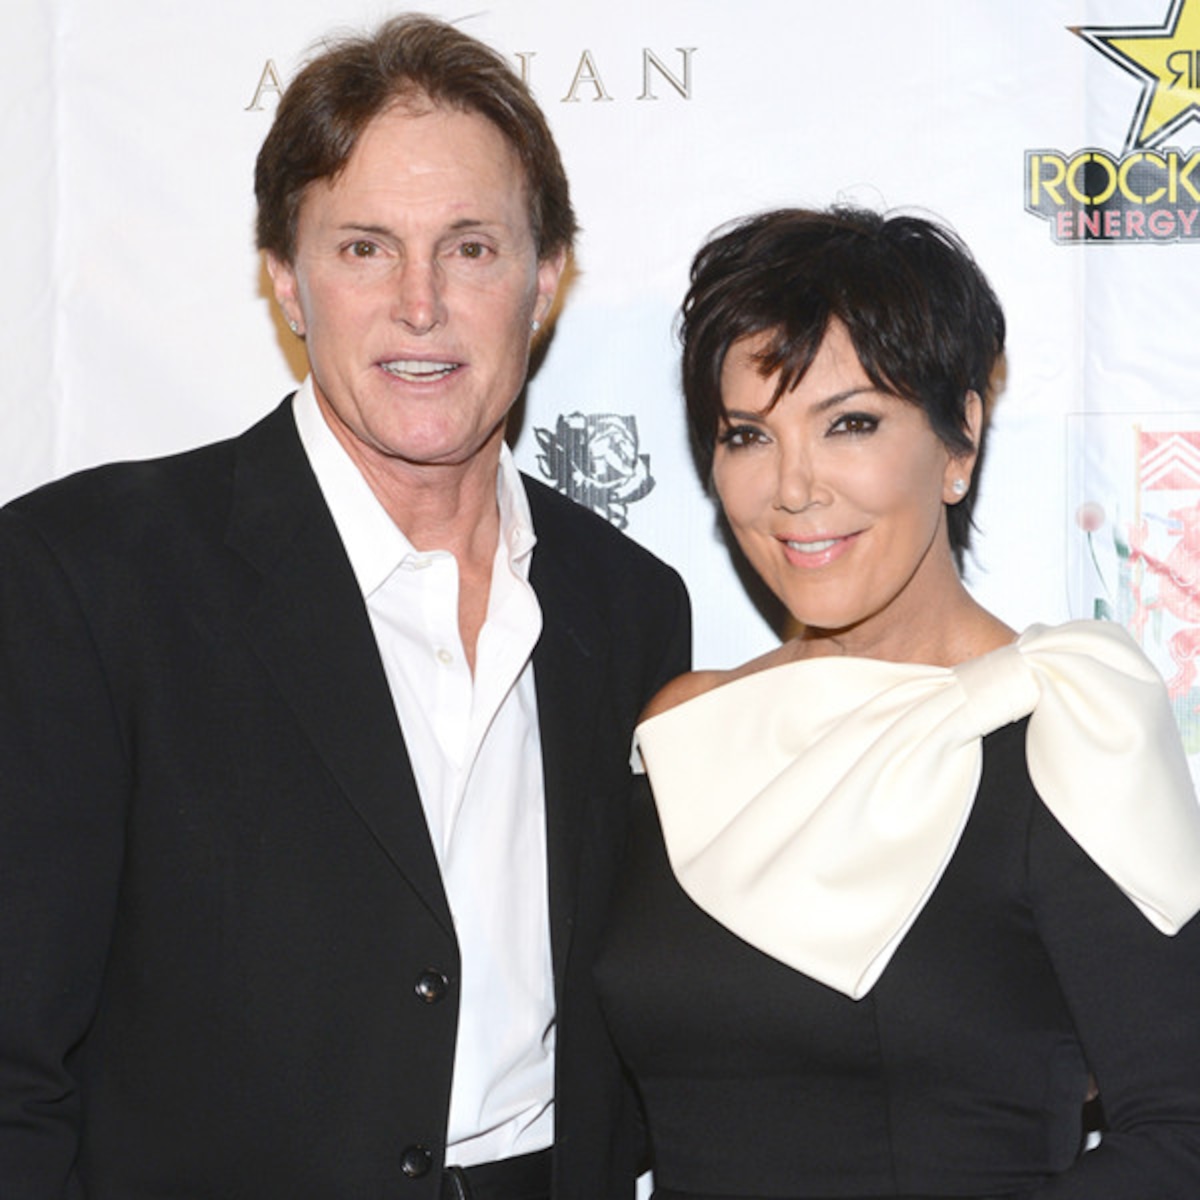    Bruce Jenner con Esposa  